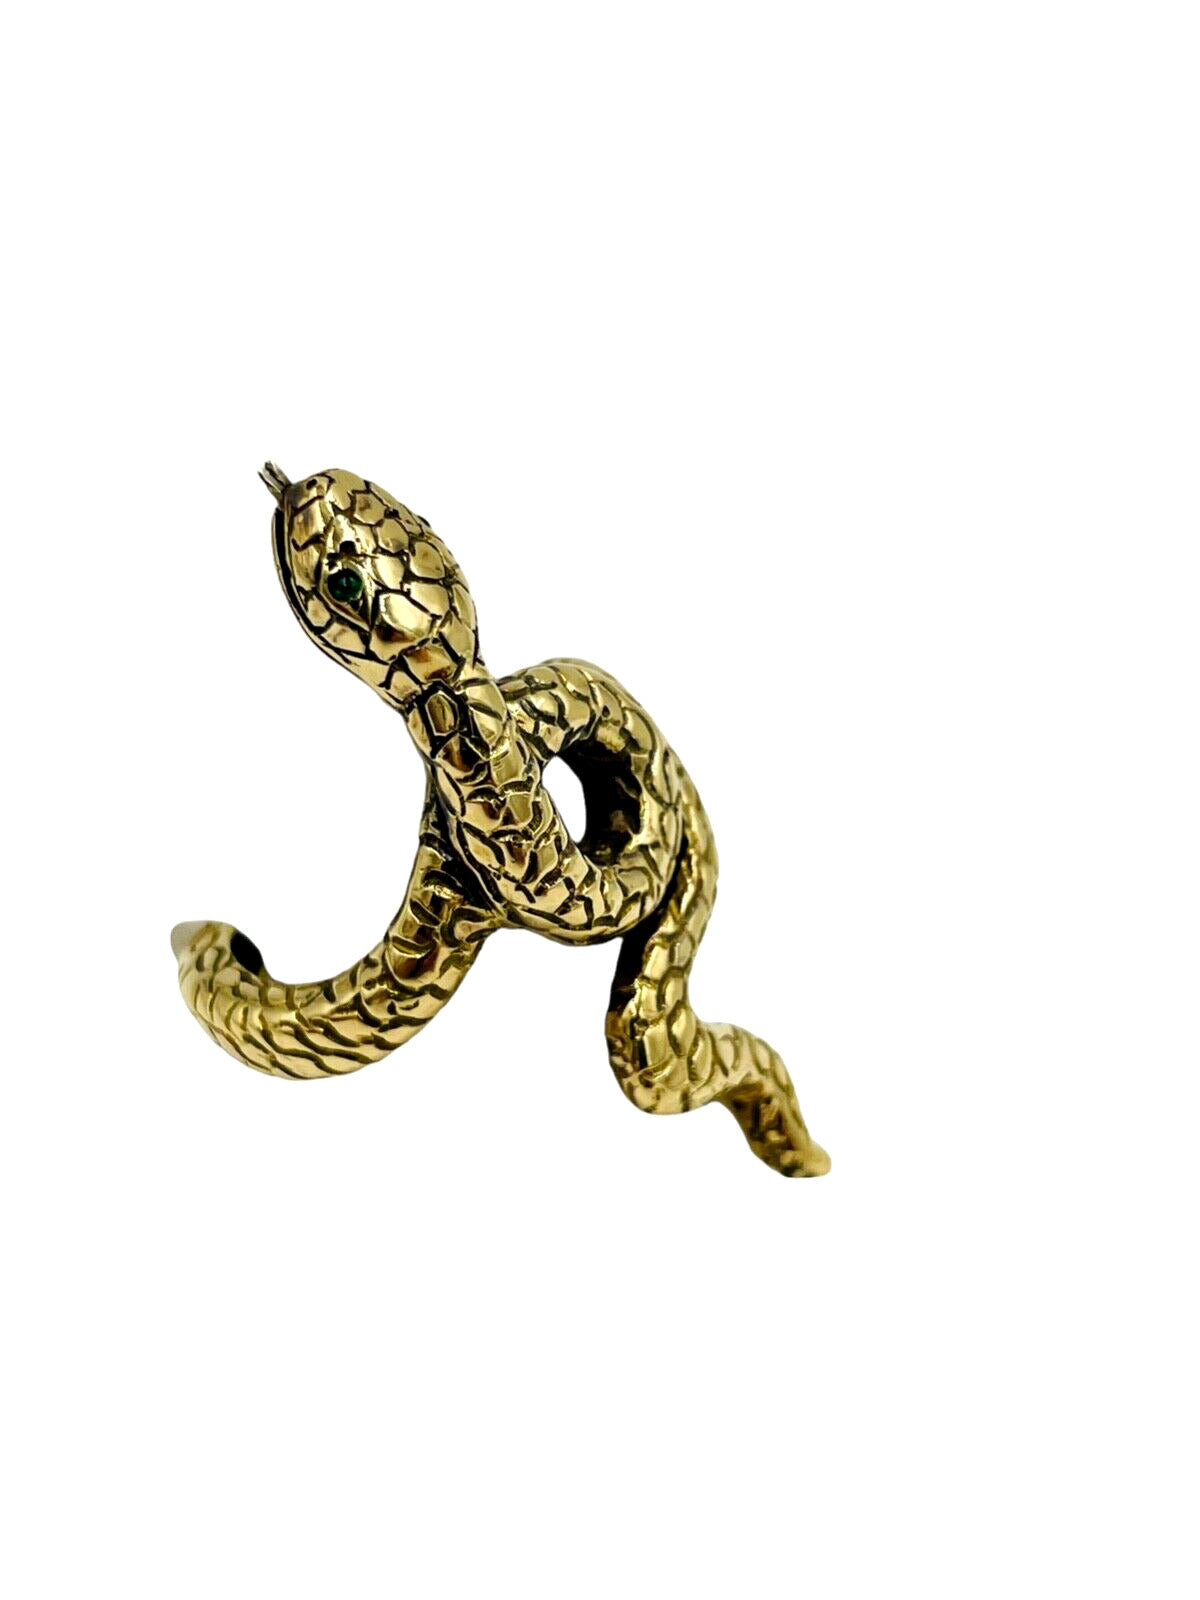 Designer signed 18k Yellow gold Snake Ring from Capri Italy